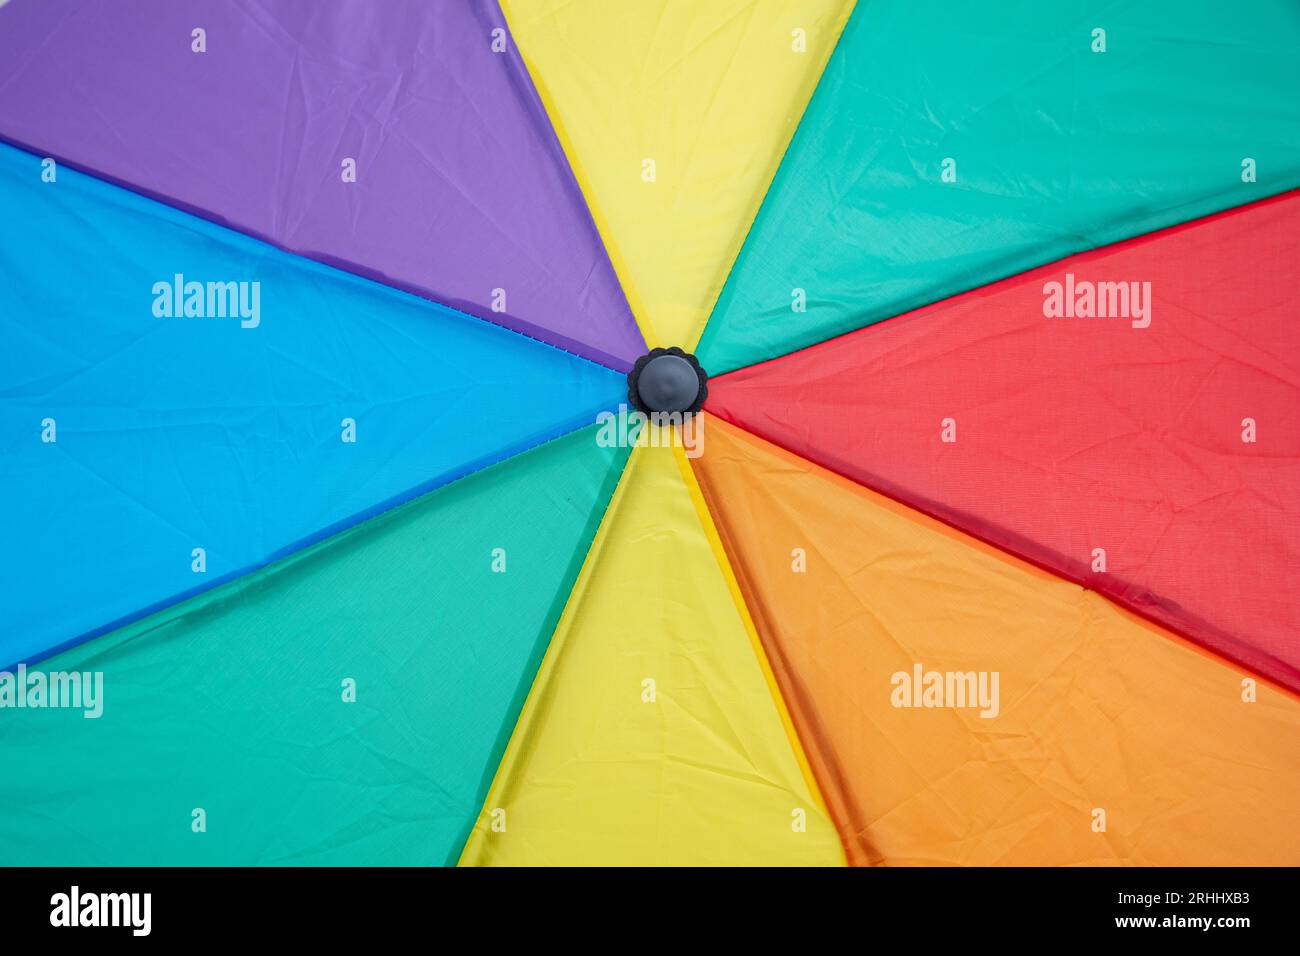 Rainbow colors umbrella closeup, a vibrant display of colors background Stock Photo